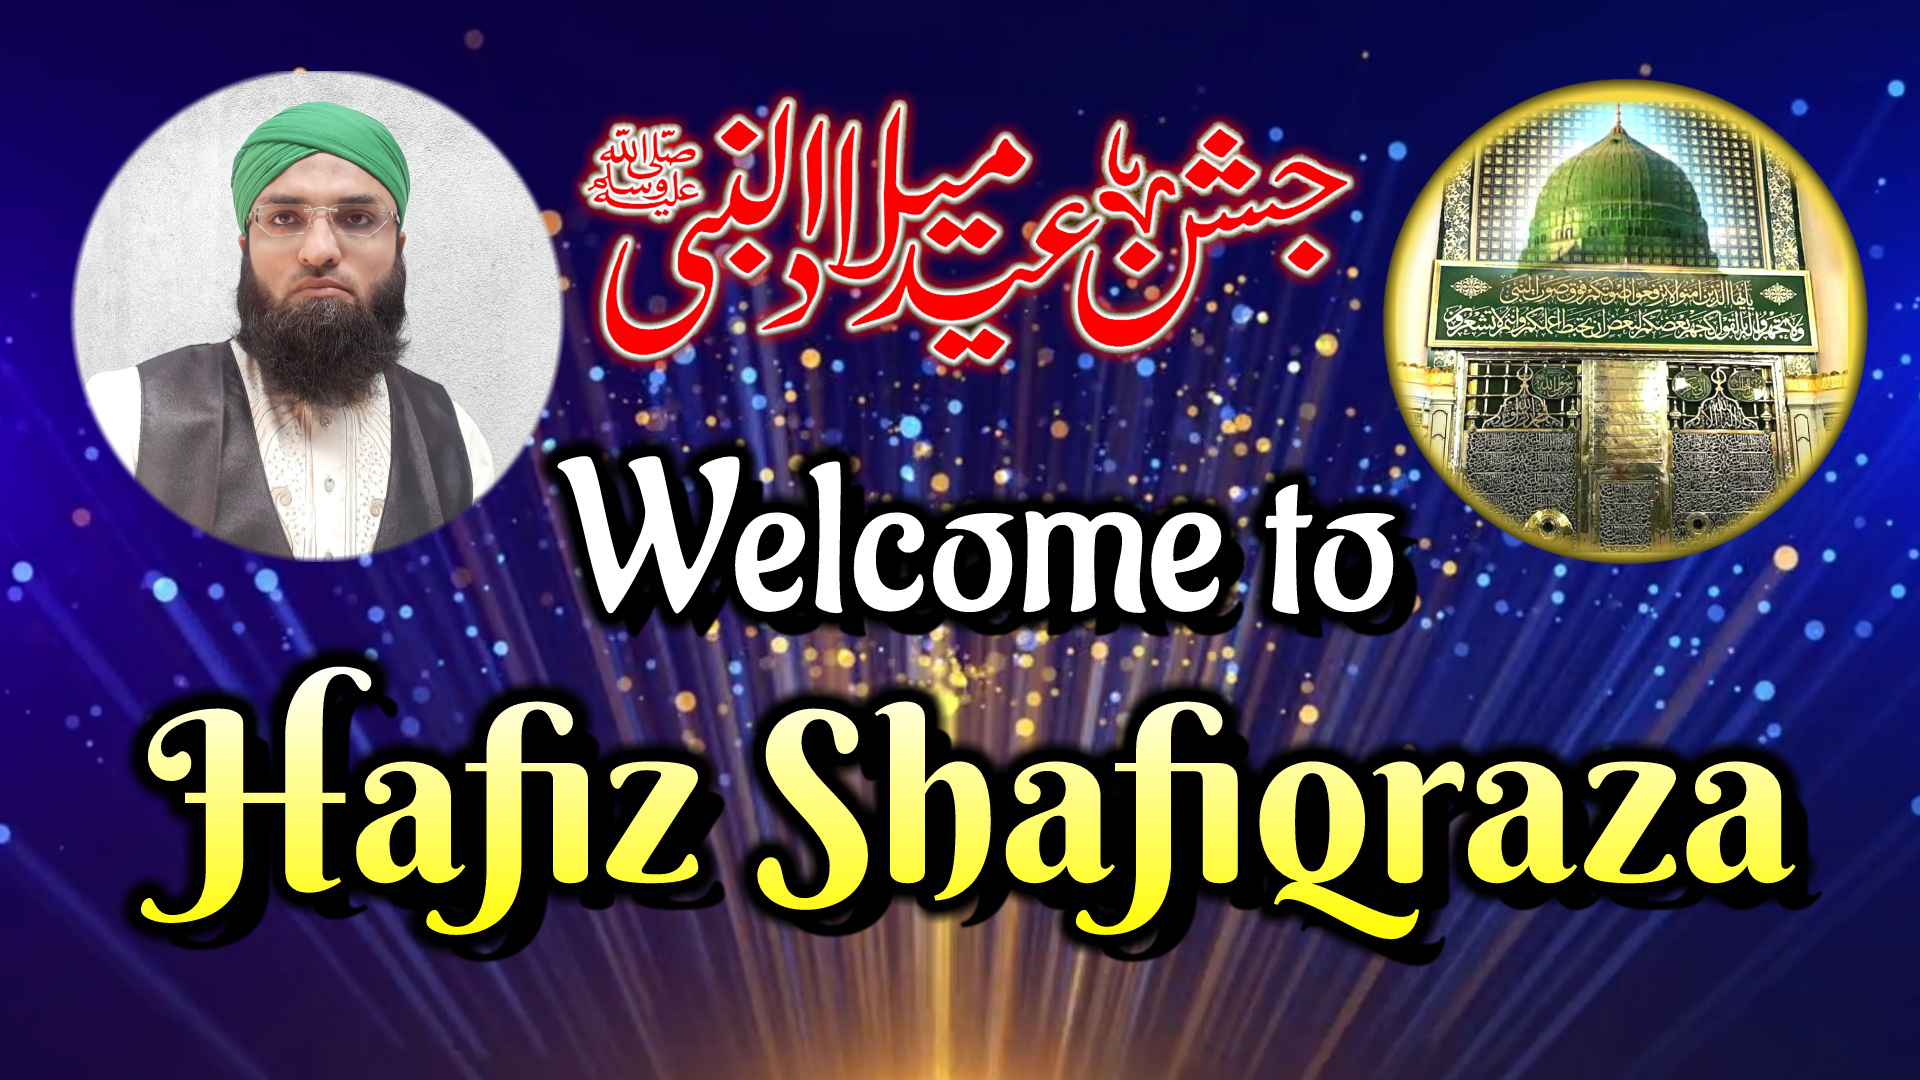 Hafiz Shafiqraza